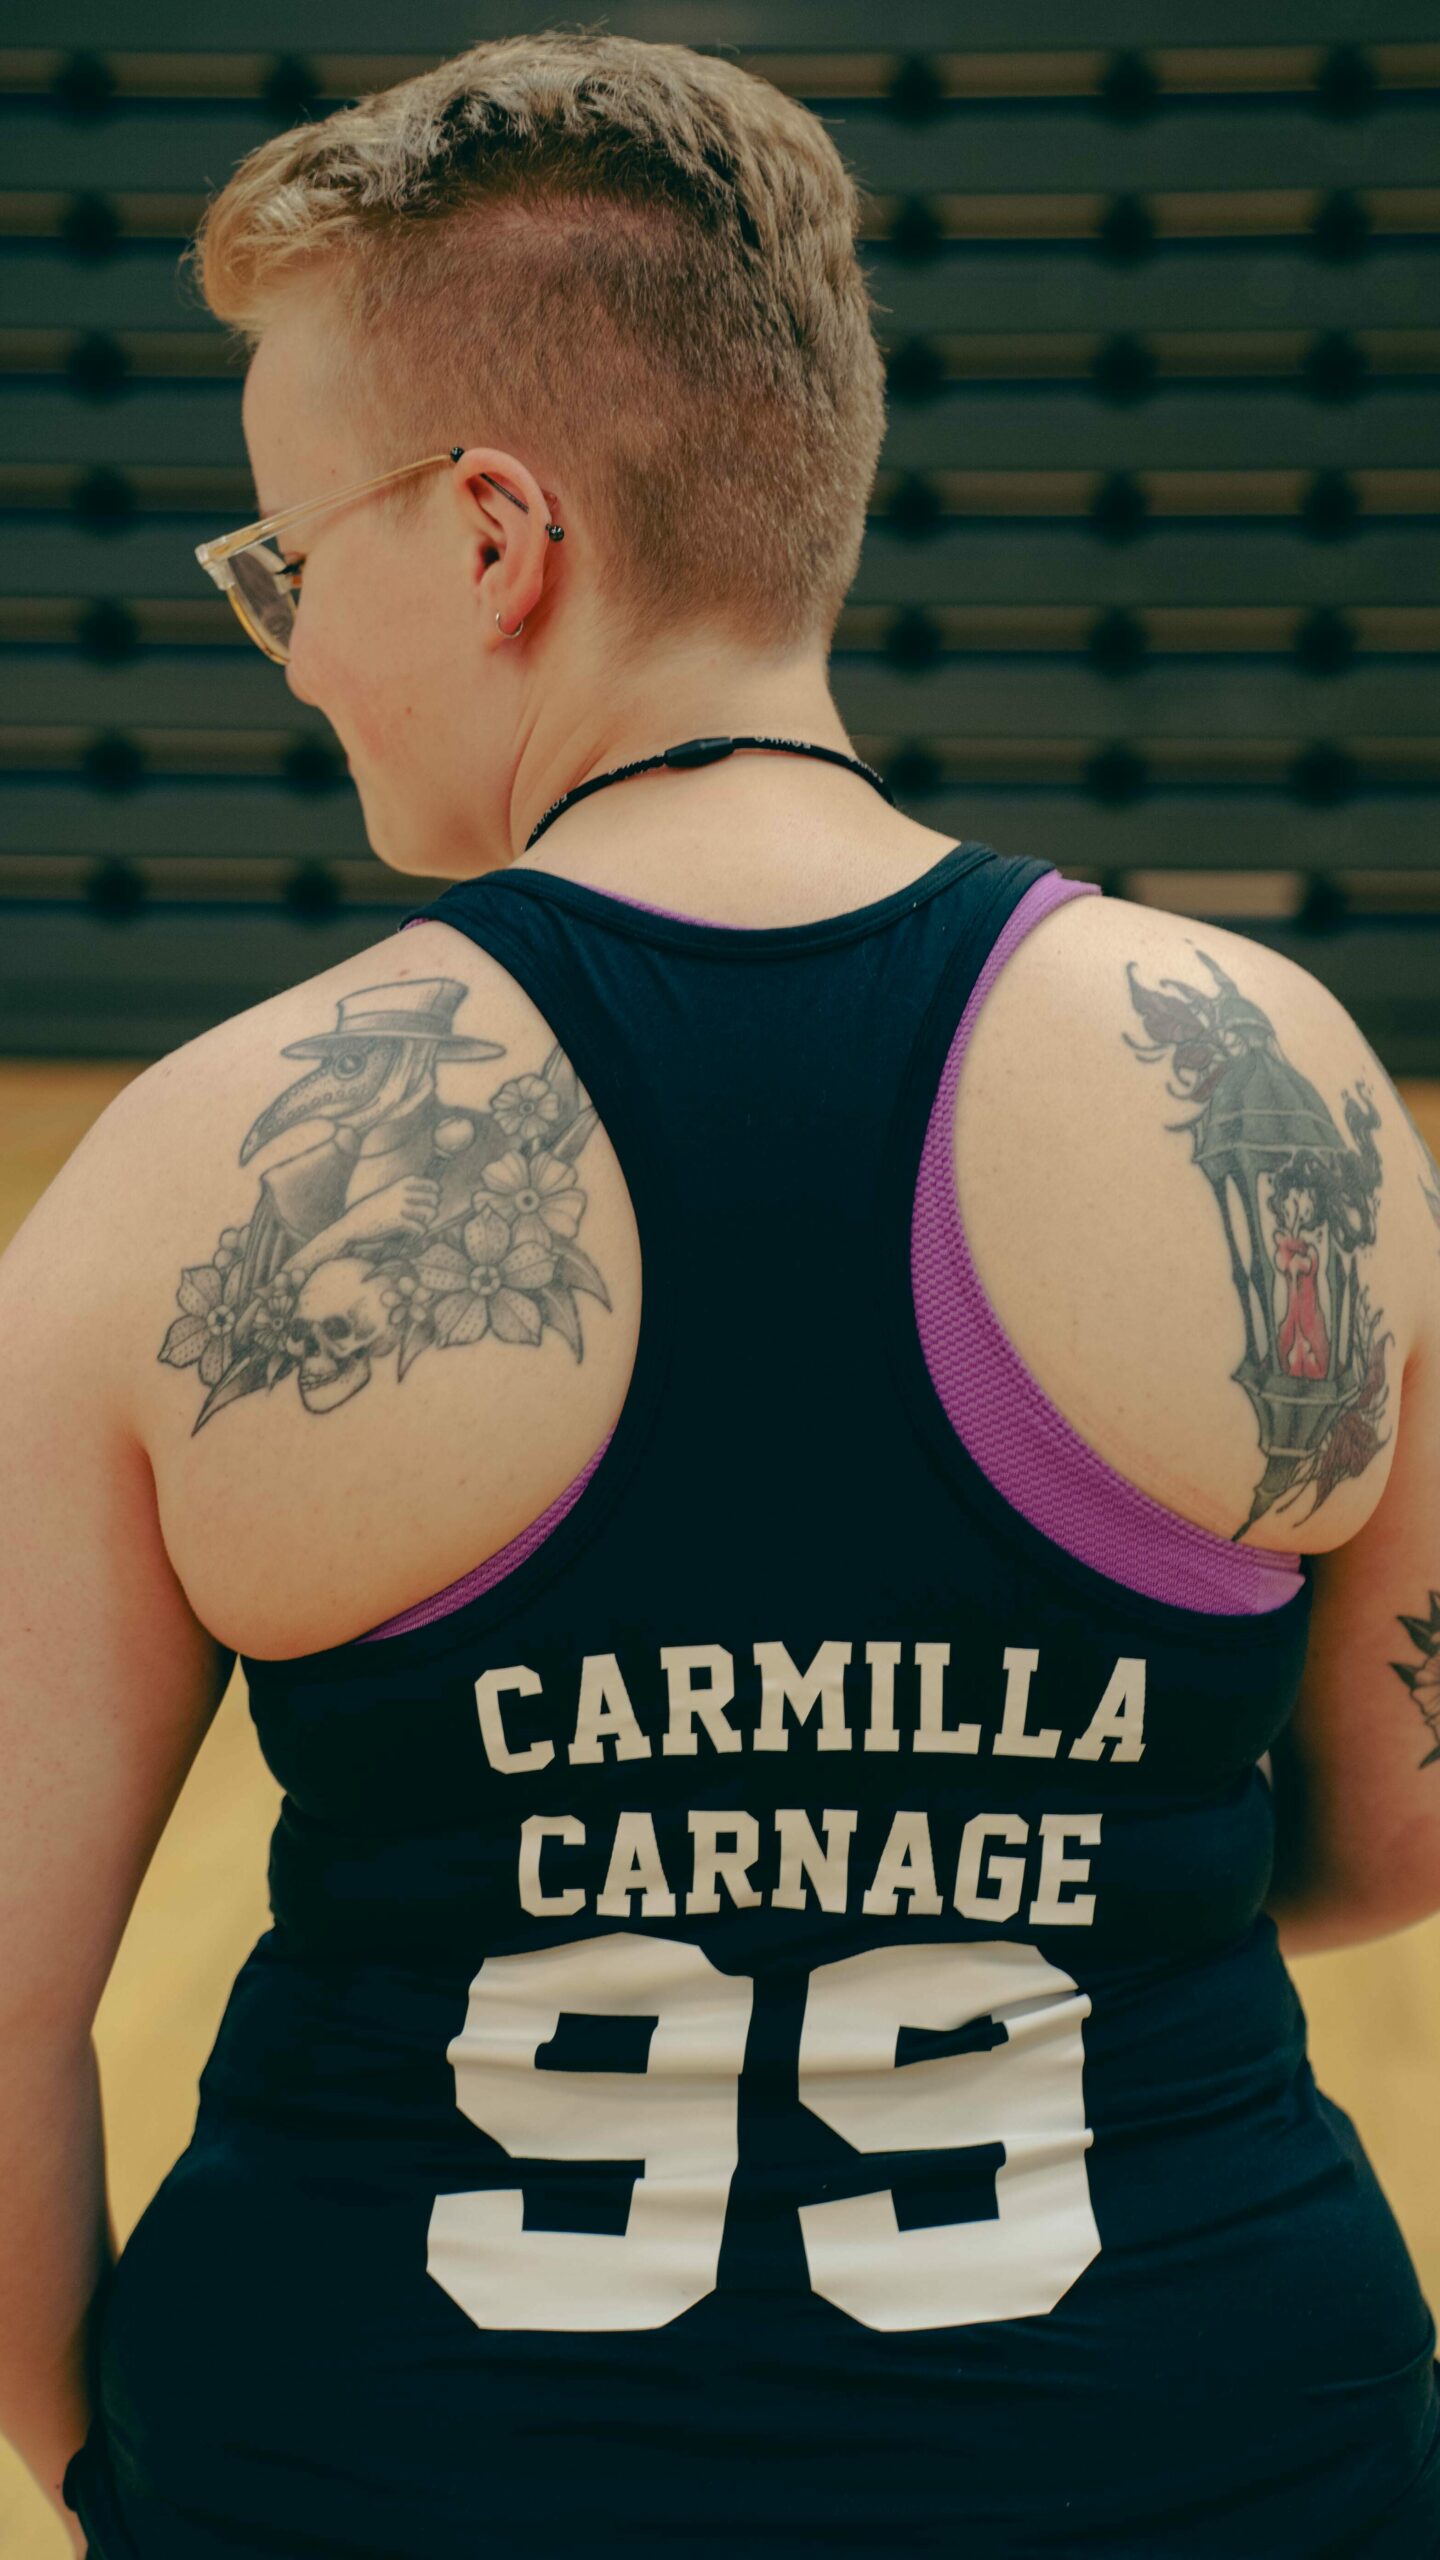 Eivor står med ryggen til kamera, og singleten hennes er i fokus. På den står spillernavnet "Carmilla Carnage" og spillenummer 99. På begge skulderbladene har hun to store tatoveringer.